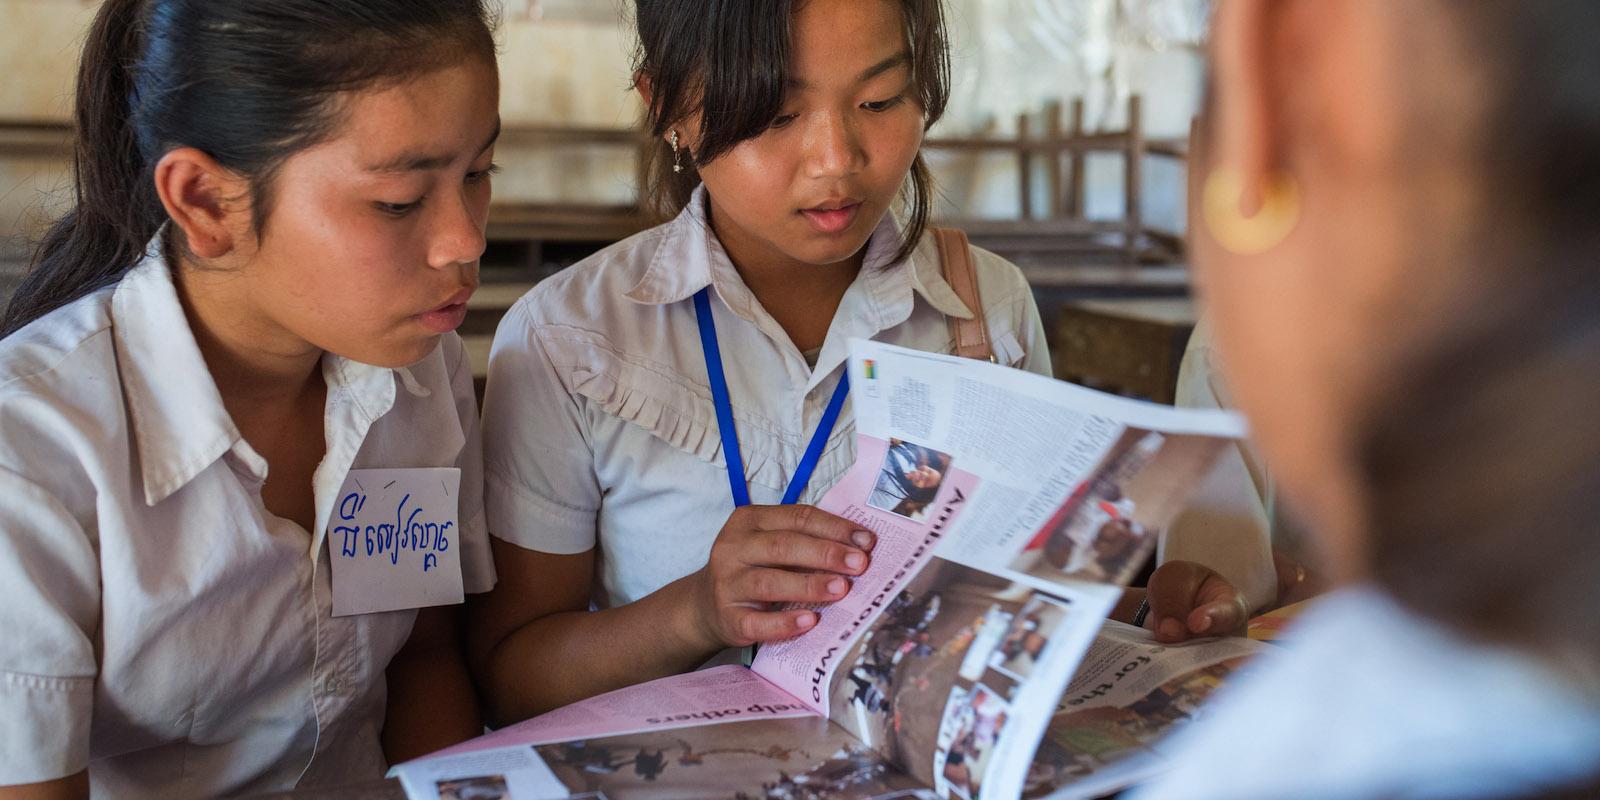 2 girls reading the Globe magazine together